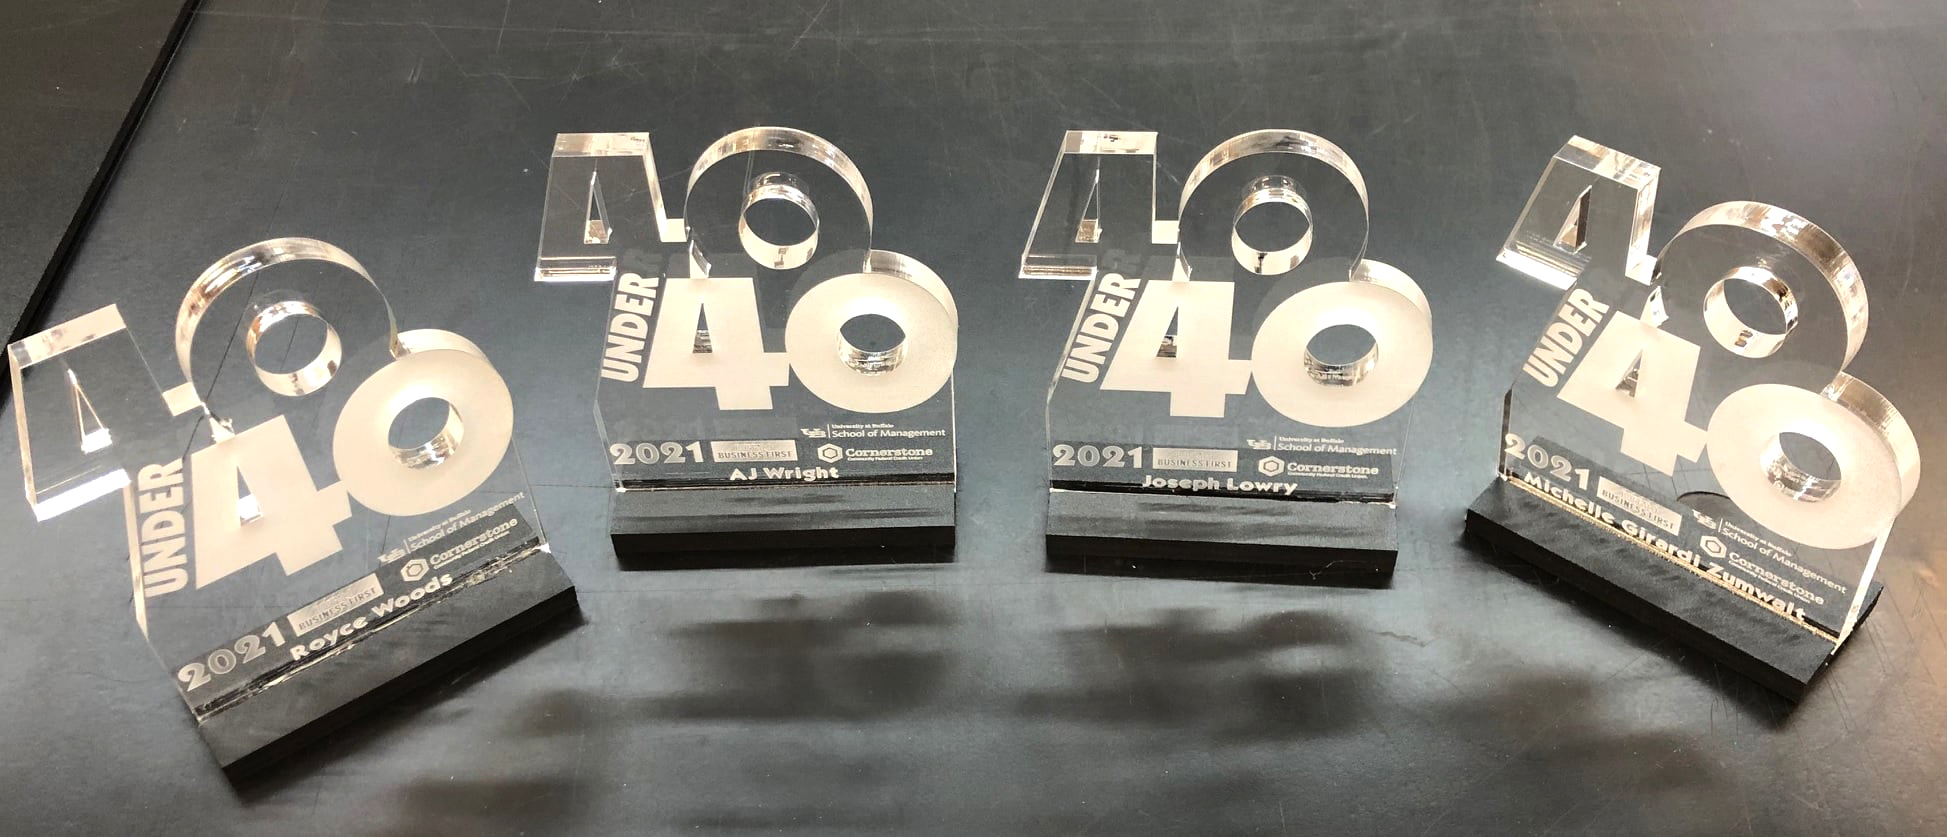 Business First 40 Under 40 laser engraved awards